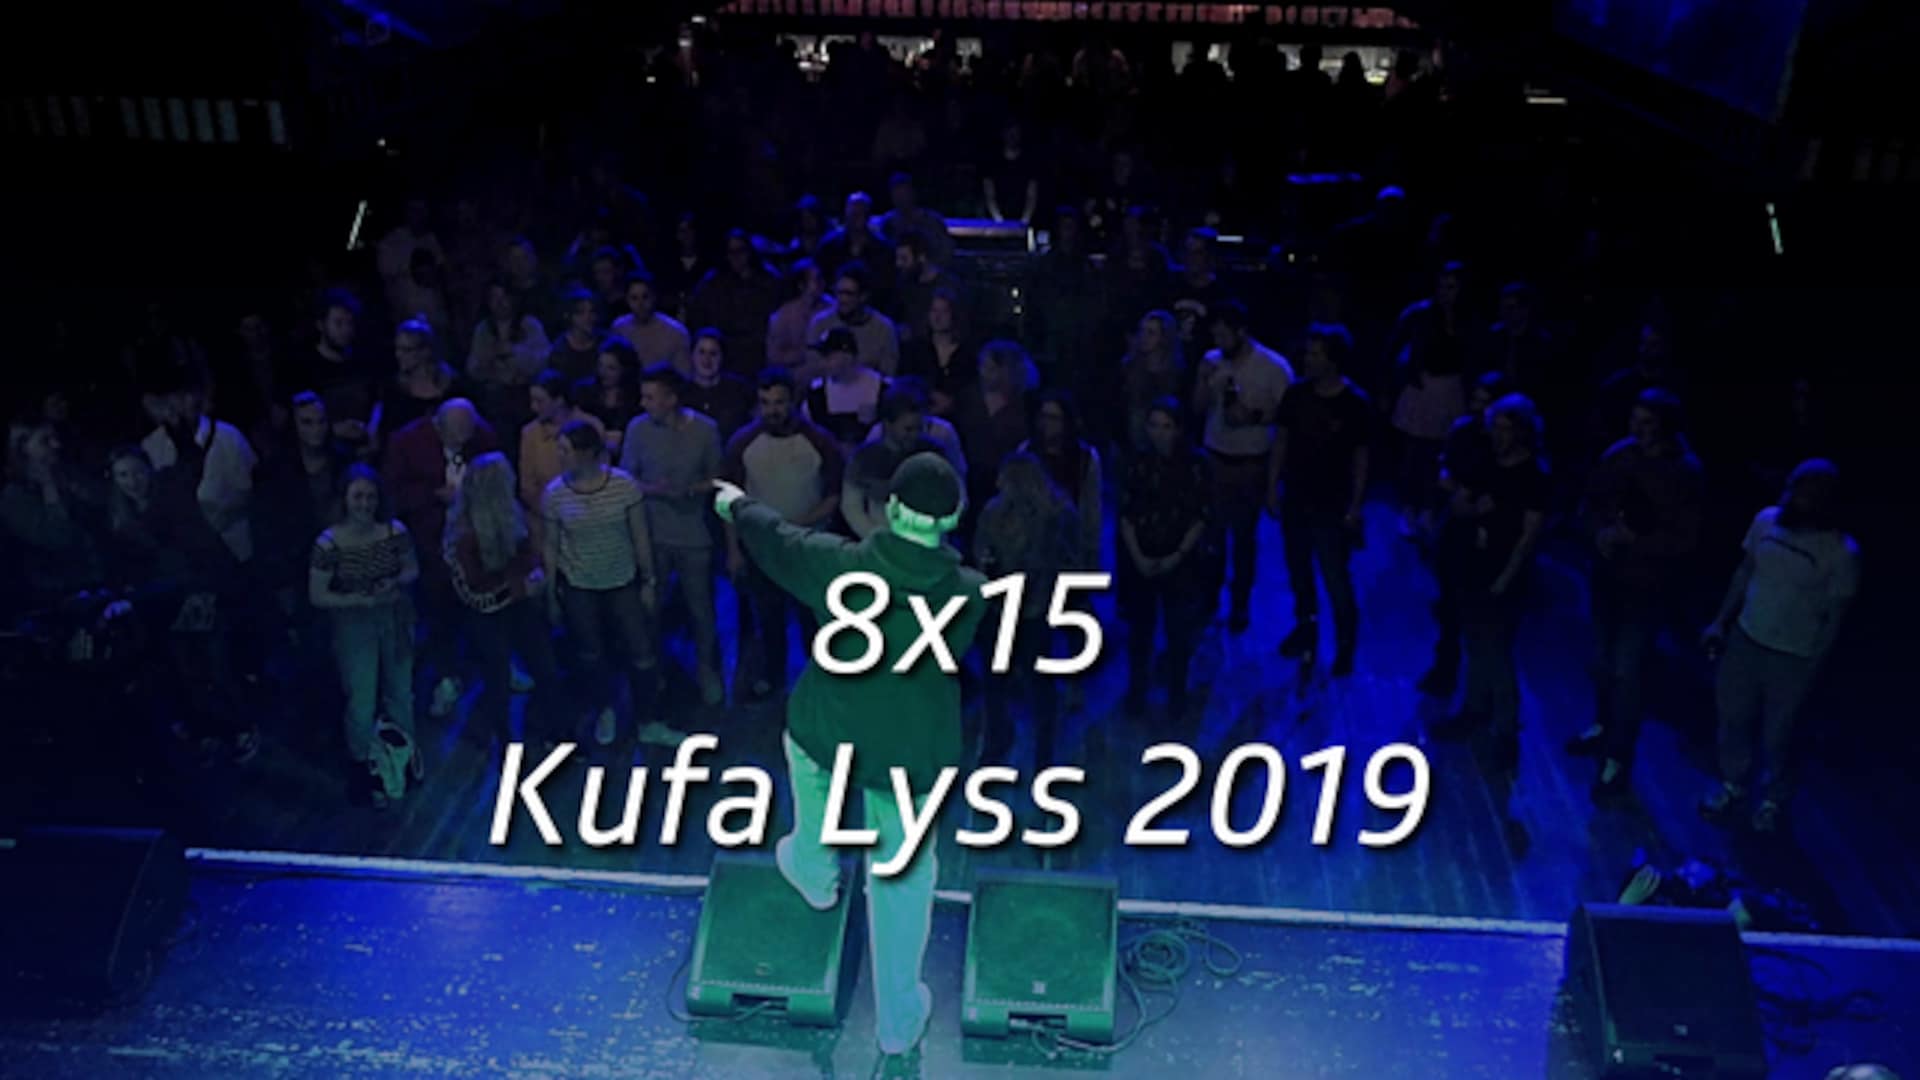 8x15 - Kufa Lyss